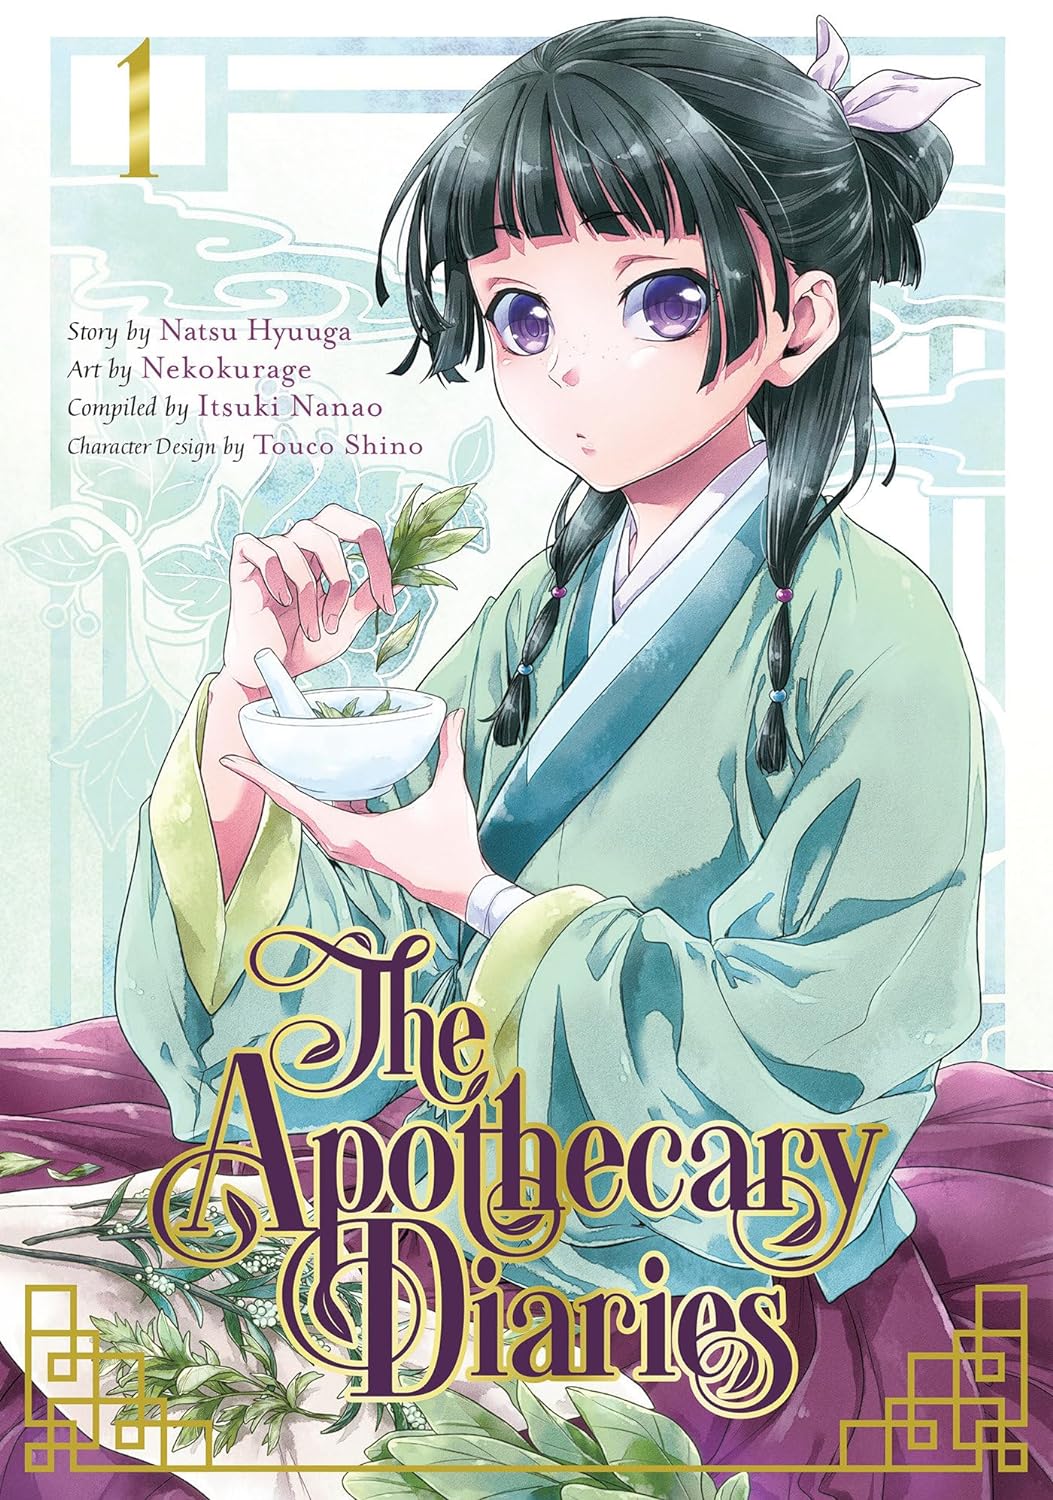 The Apothecary Diaries (Manga)